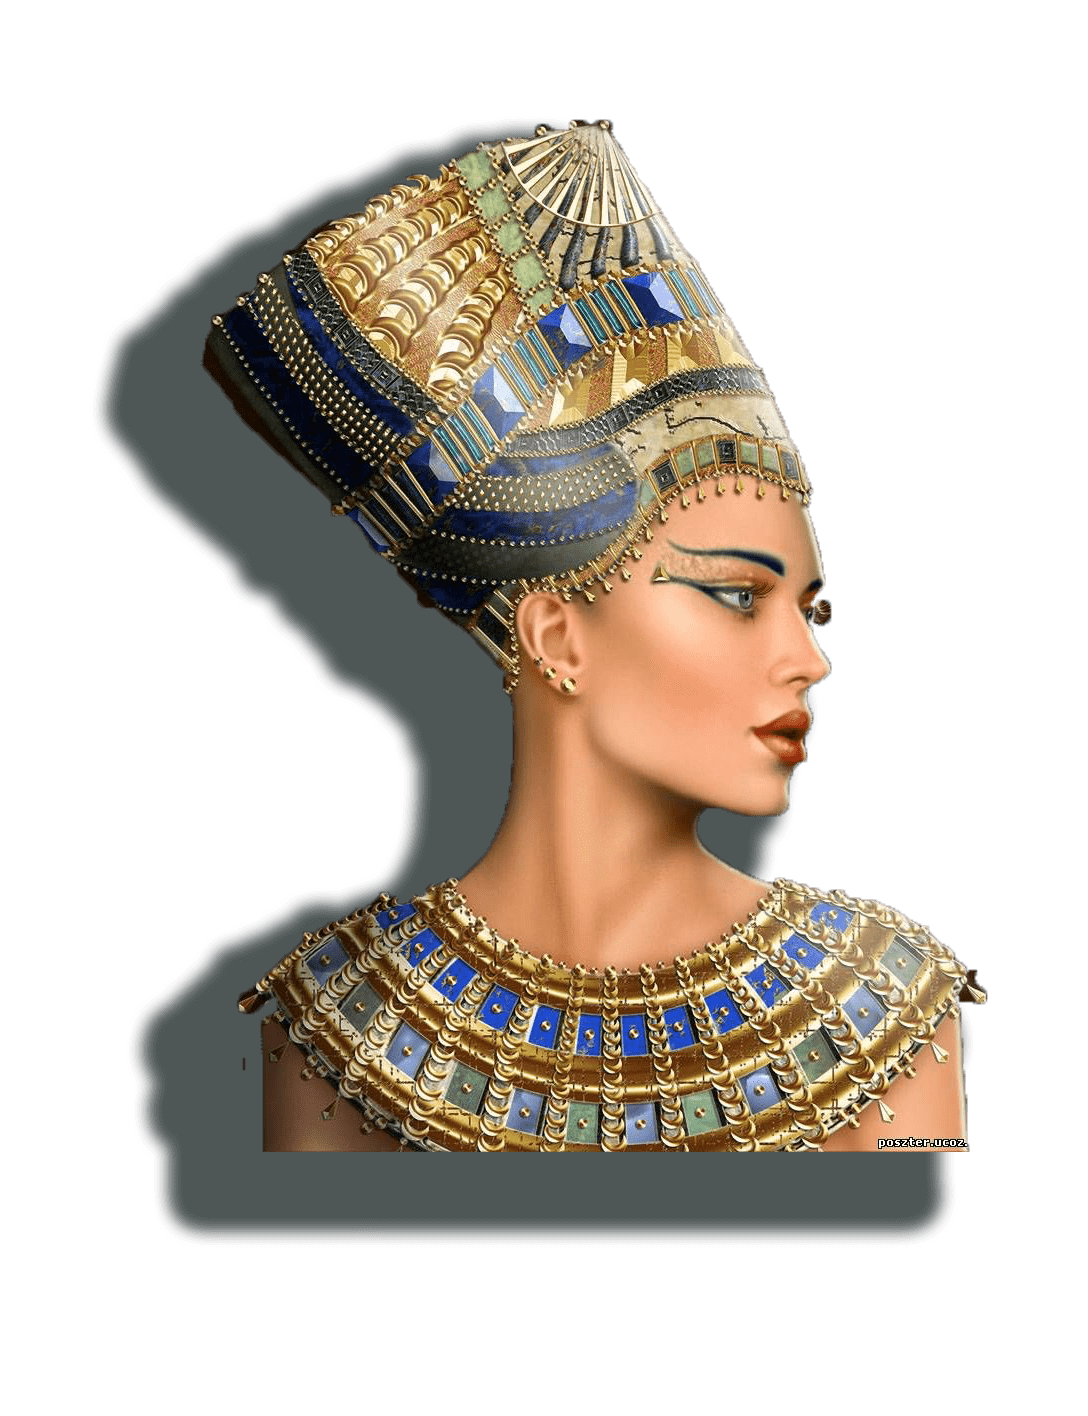 Revista Nefertiti / Portda edici[on Otono de 2020 ano 12 nro 3